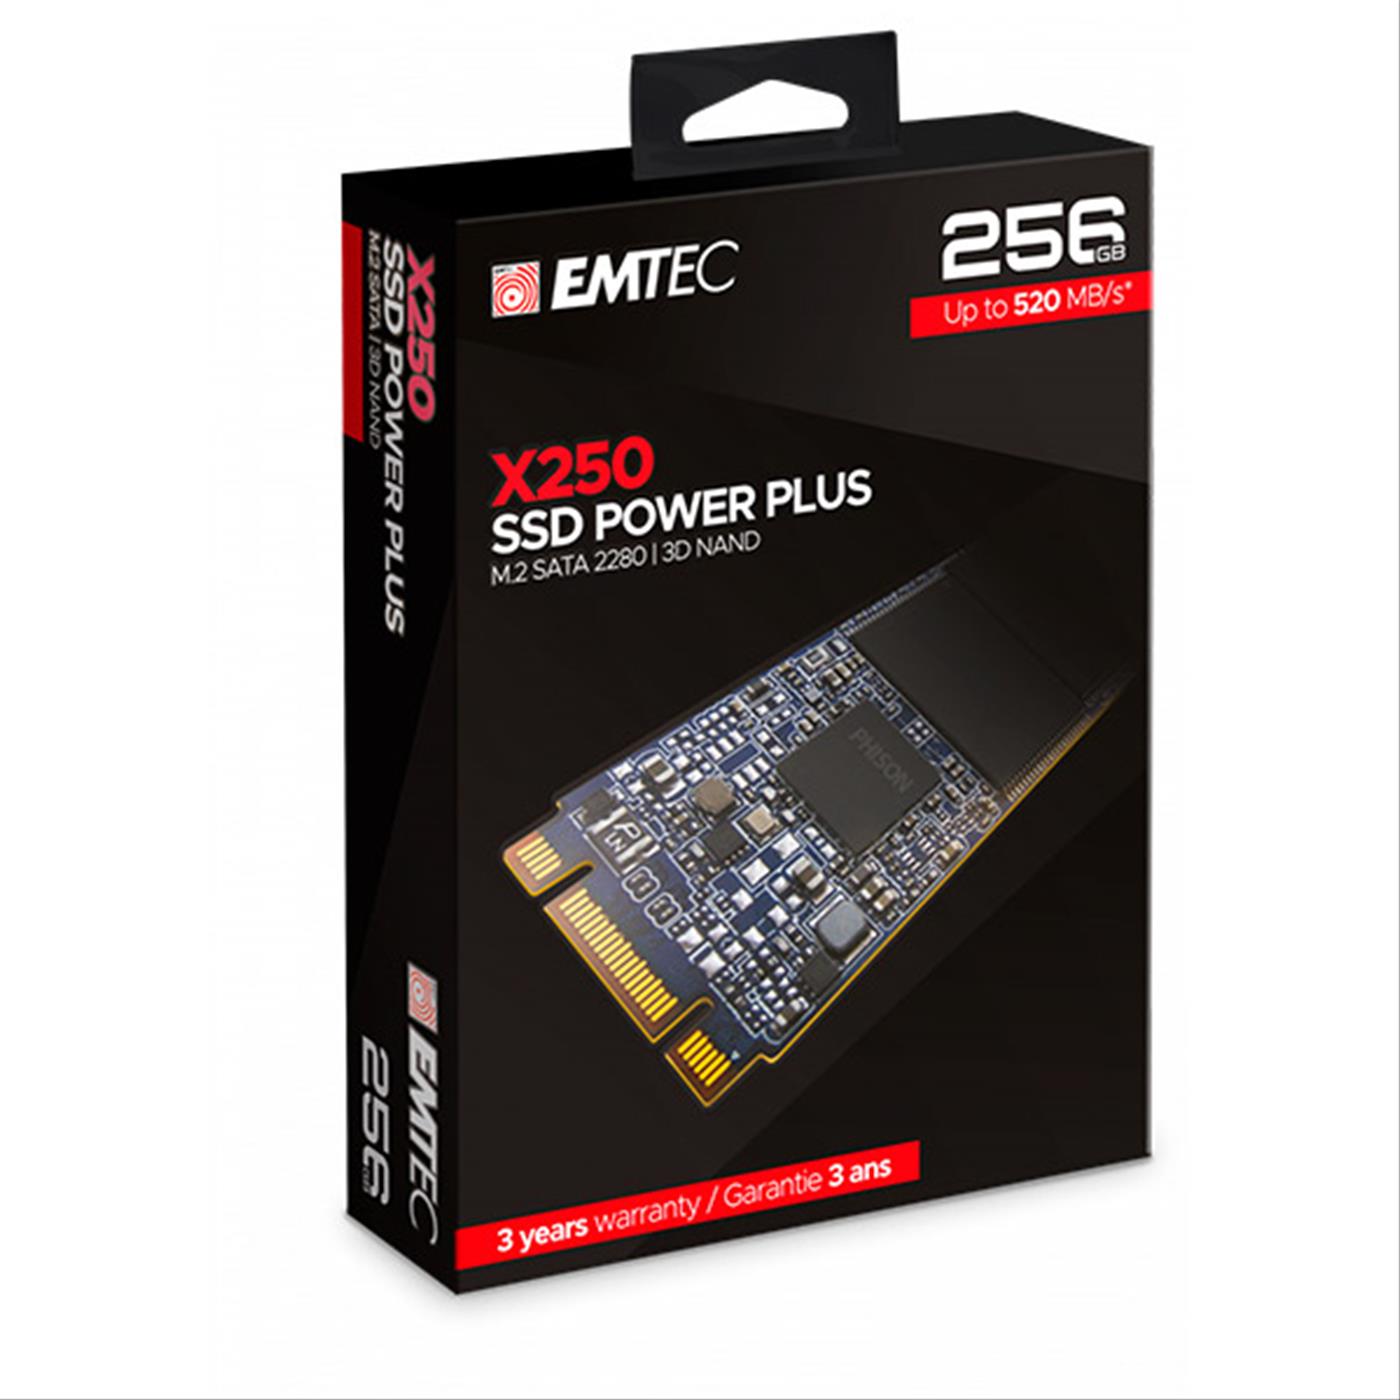 Ssd M2 2280 256gb Emtec Power Plus X250 Sata